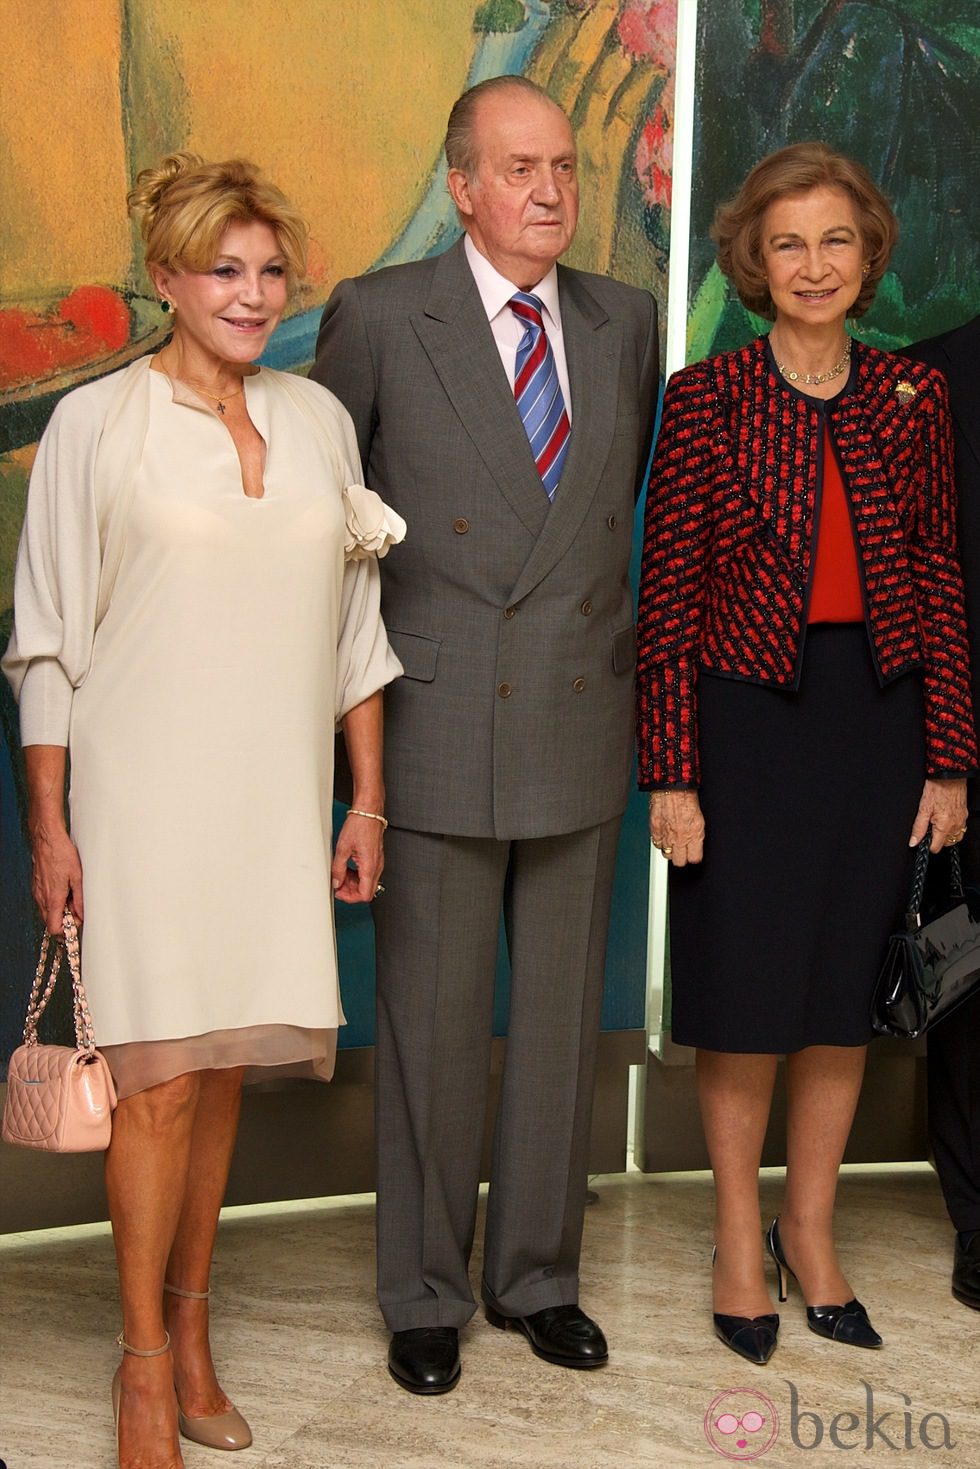 Carmen Cervera y los Reyes Juan Carlos y Sofía en el 20 aniversario del Museo Thyssen-Bornemisza